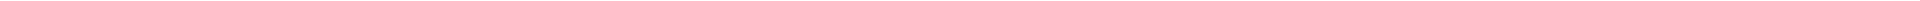 Детская стоматология в Алматы, Астане (Нур-Султан), Усть-Каменогорске, Атырау, Уральск, Кокшетау в Казахстане, фото 16